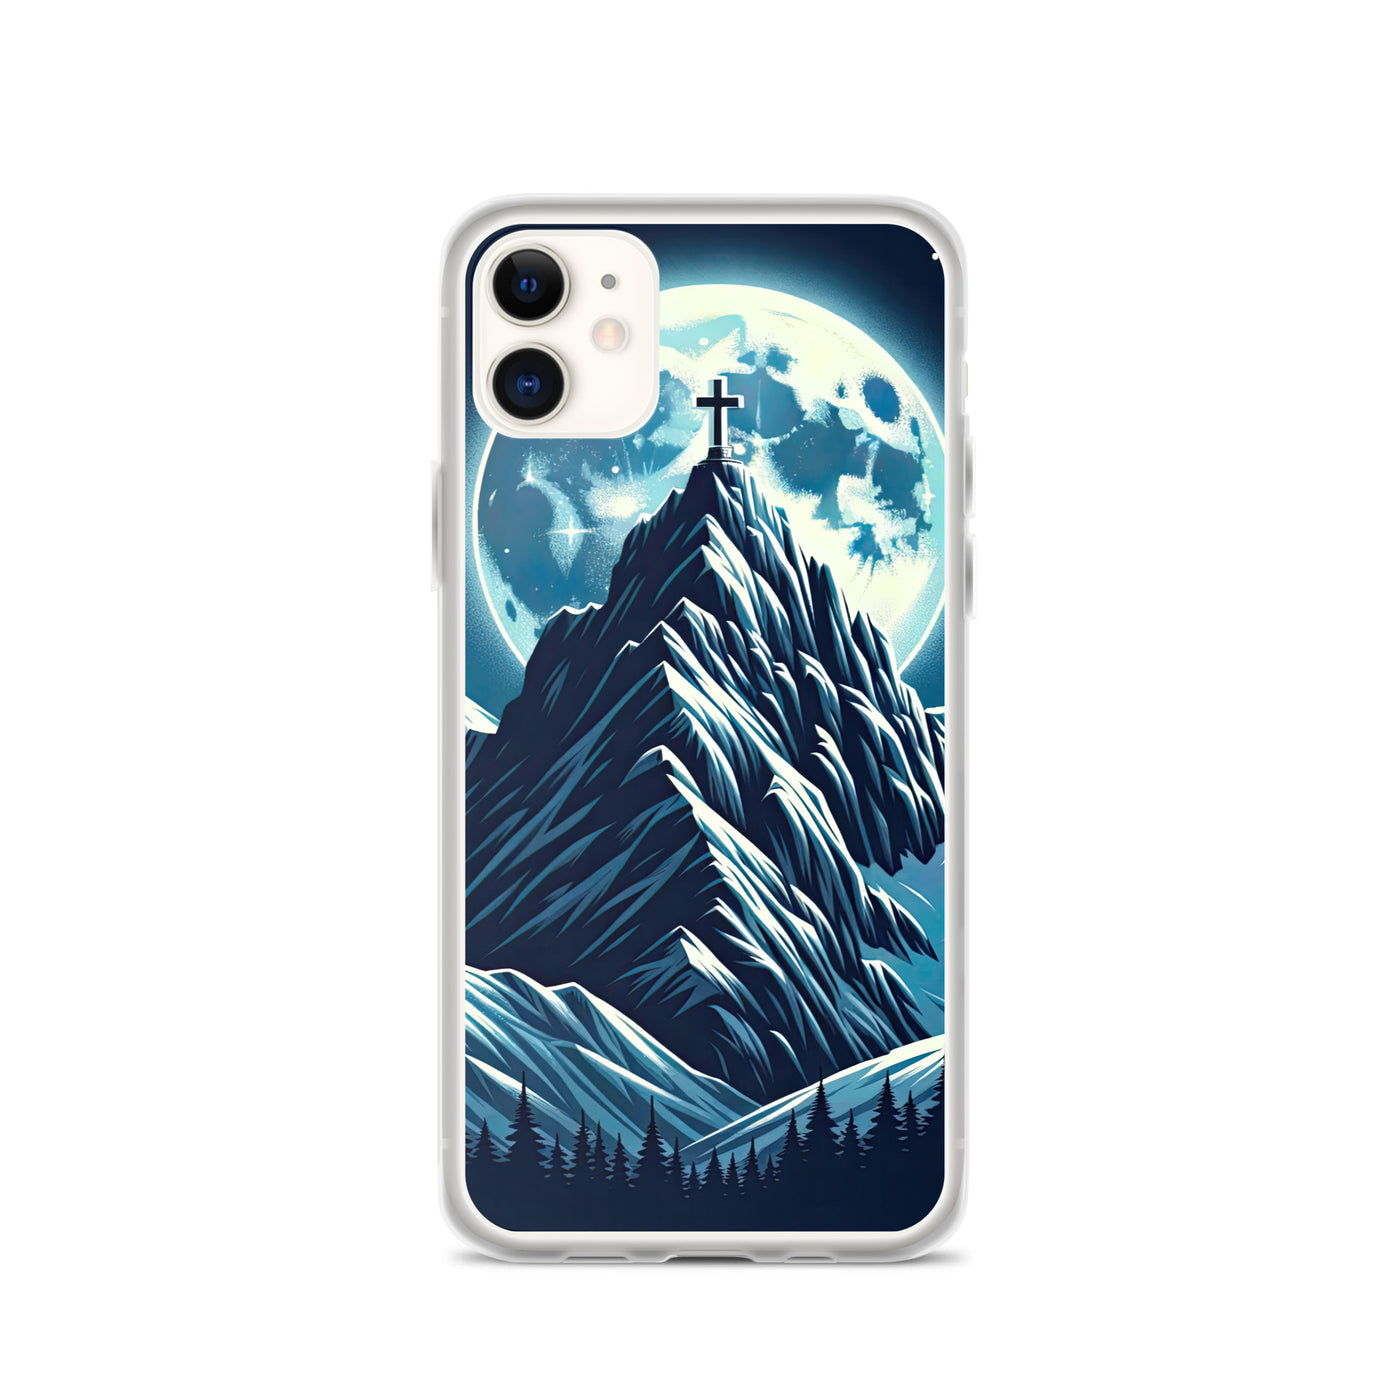 Mondnacht und Gipfelkreuz in den Alpen, glitzernde Schneegipfel - iPhone Schutzhülle (durchsichtig) berge xxx yyy zzz iPhone 11